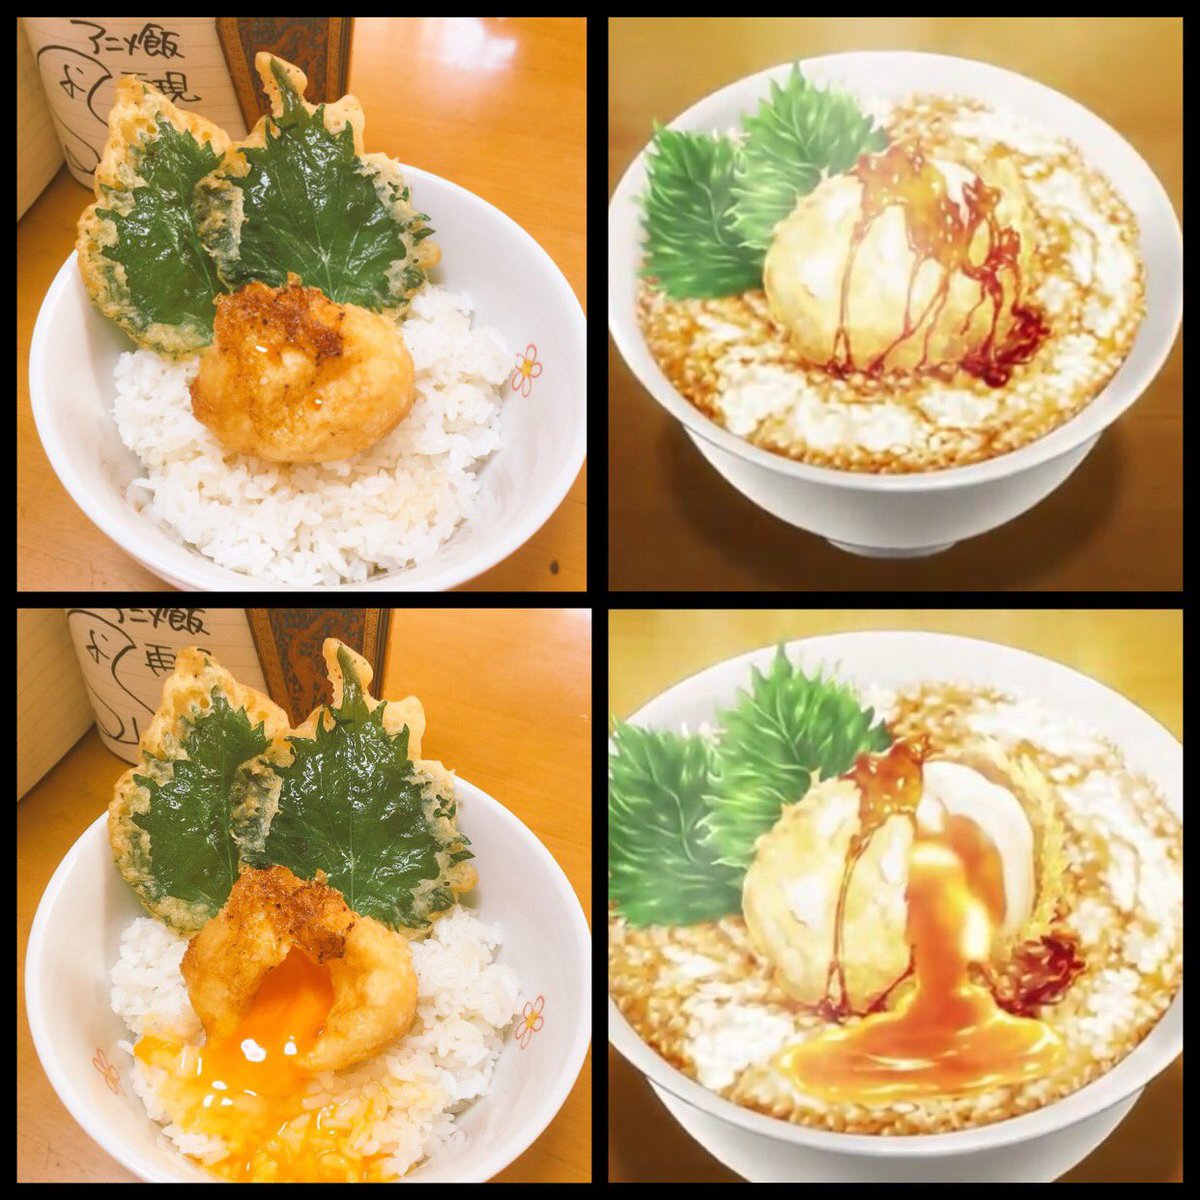 シャンプー 再現料理人 在 Twitter 上 食戟のソーマ 餐の皿 第13話 より 遠月列車篇 鶏卵の天ぷら丼 トロトロに仕上がっているッ この天ぷらかなり難しいです W 作り方 考察はリプ欄に投稿します 黄身がトロトロで最高に美味い 食戟のソーマ